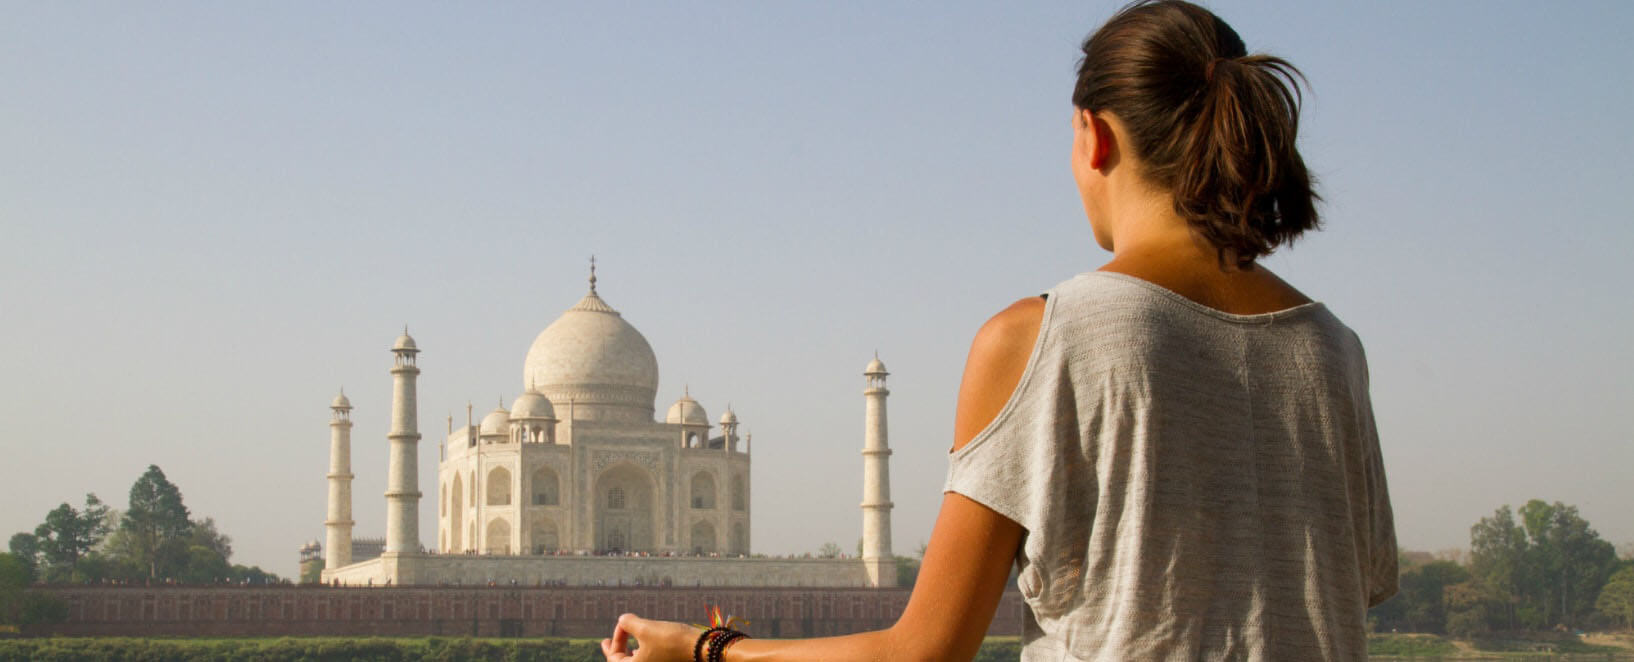 Yoga by Taj Mahal